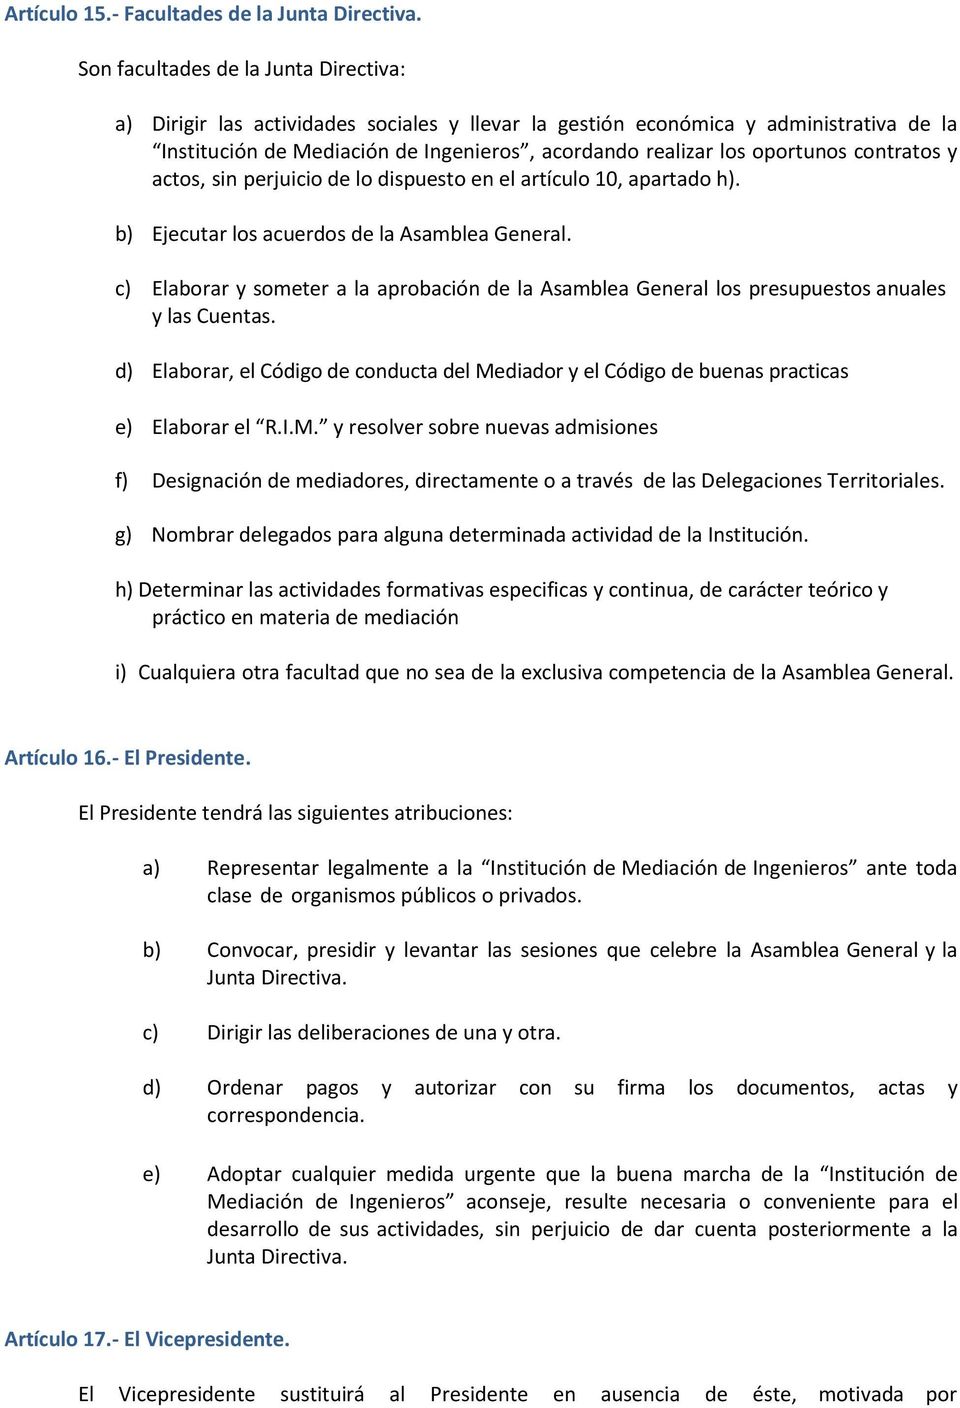 contratos y actos, sin perjuicio de lo dispuesto en el artículo 10, apartado h). b) Ejecutar los acuerdos de la Asamblea General.